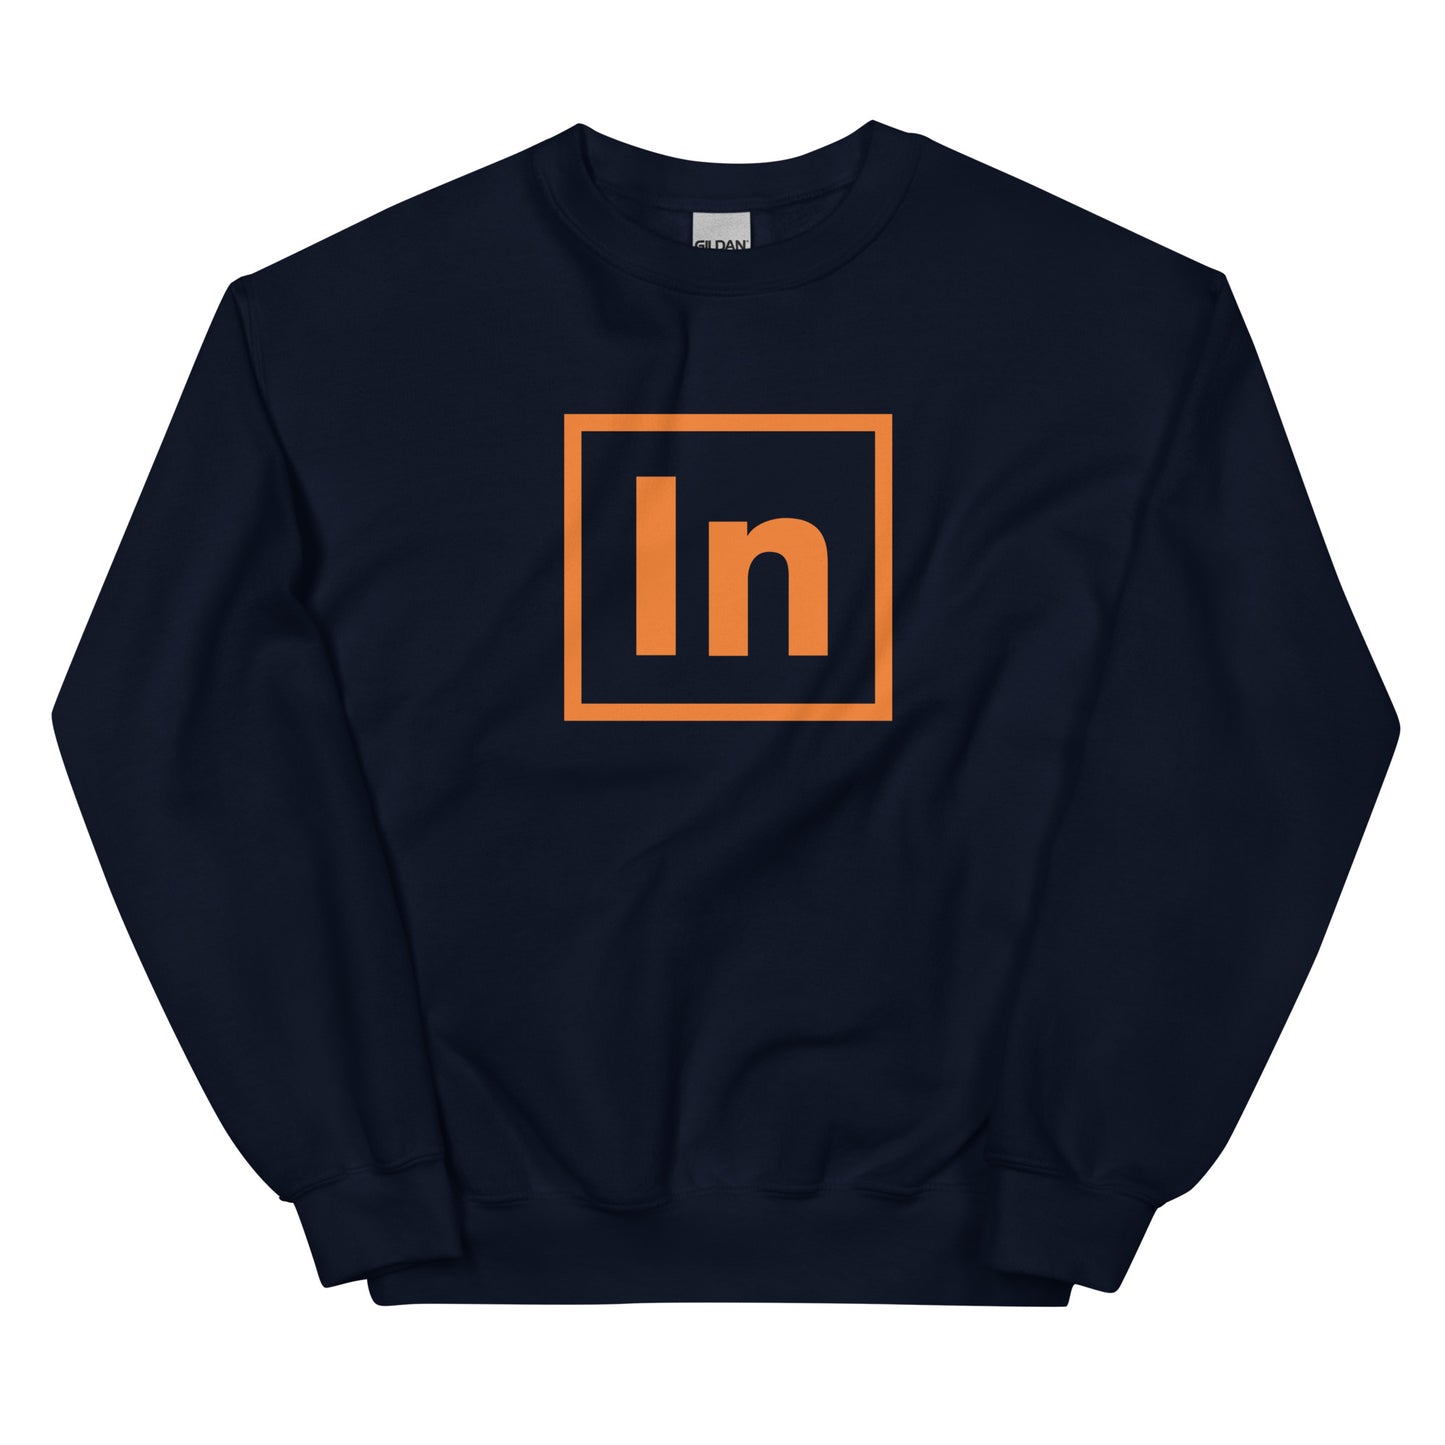 Unisex Value Sweatshirt (classic fit) - "In"